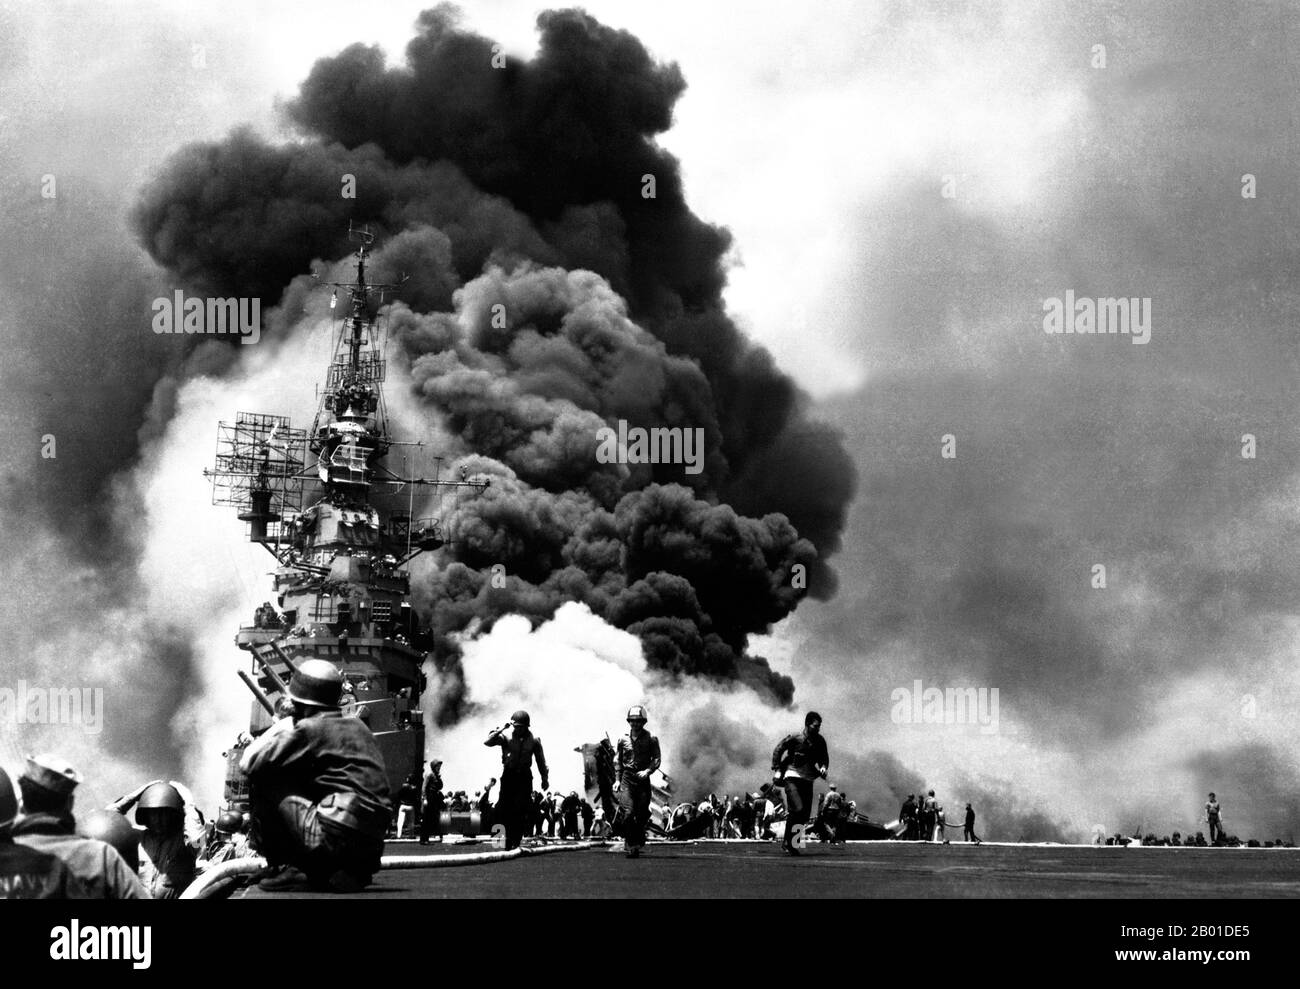 États-Unis/Japon: L'USS Bunker Hill a frappé par deux avions japonais kamikaze au large de Kyushu, le 11 mai 1945. Les kamikaze (vent de mer) étaient des attaques suicide par des aviateurs militaires de l'Empire du Japon contre des navires de guerre alliés dans les phases de clôture de la campagne du Pacifique de la Seconde Guerre mondiale, visant à détruire autant de navires de guerre que possible. Les pilotes de kamikaze tenteraient de faire voler leurs avions sur des navires ennemis dans des avions chargés d'explosifs, de bombes, de torpilles et de réservoirs pleins de carburant. Les fonctions normales de l'avion (pour livrer des torpilles ou des bombes ou pour abattre d'autres avions) ont été mises de côté. Banque D'Images